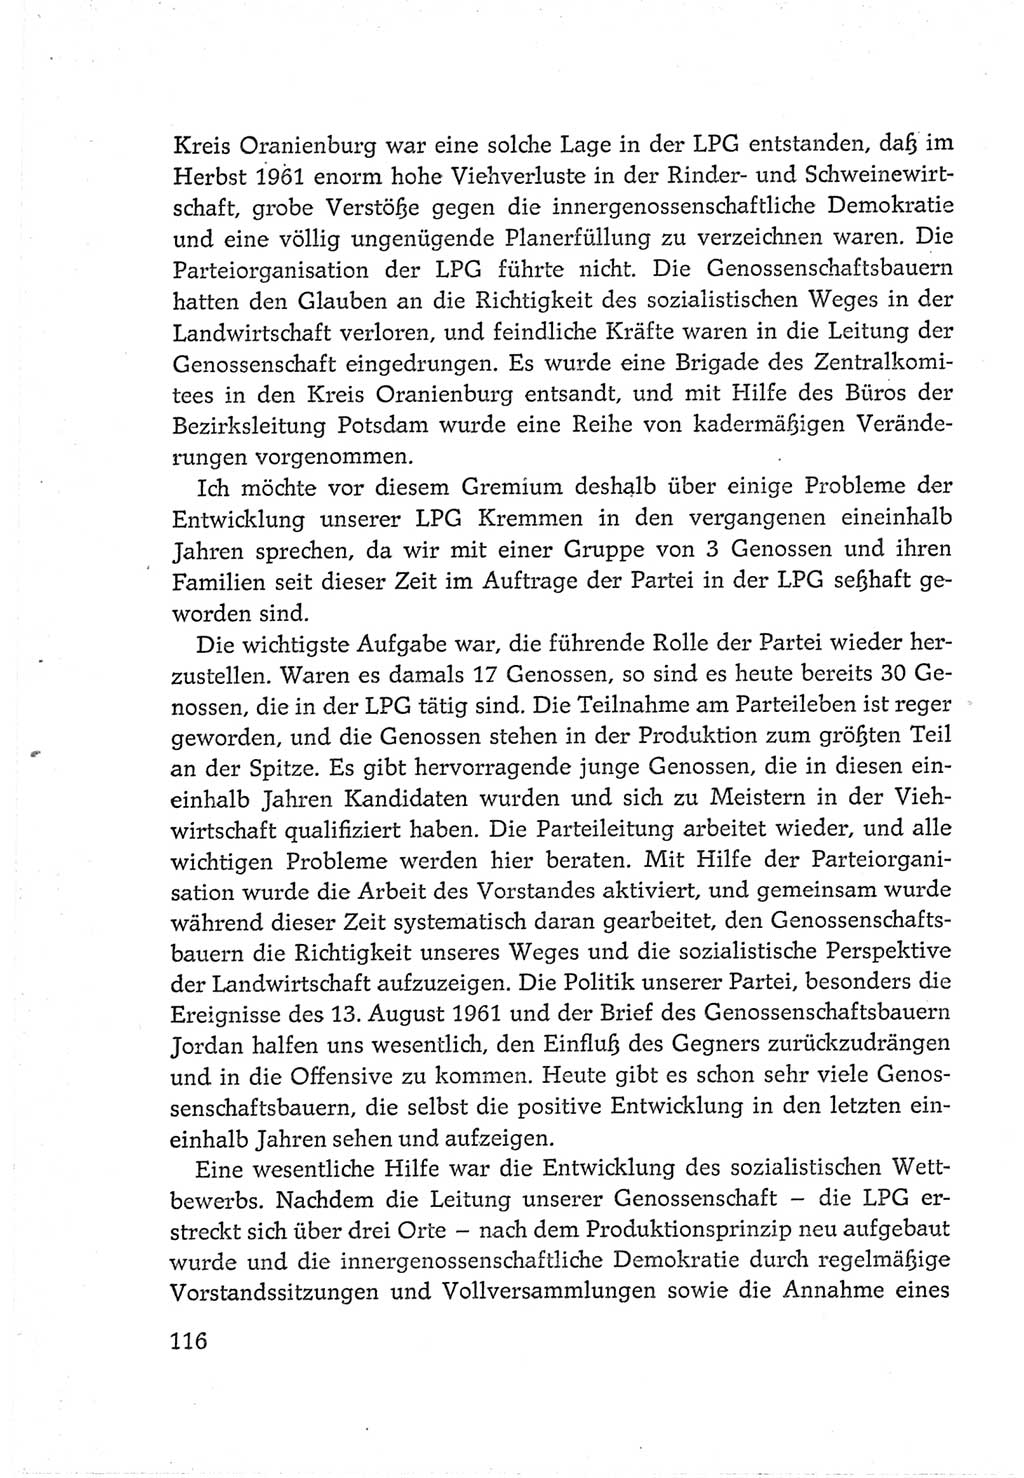 Protokoll der Verhandlungen des Ⅵ. Parteitages der Sozialistischen Einheitspartei Deutschlands (SED) [Deutsche Demokratische Republik (DDR)] 1963, Band Ⅲ, Seite 116 (Prot. Verh. Ⅵ. PT SED DDR 1963, Bd. Ⅲ, S. 116)